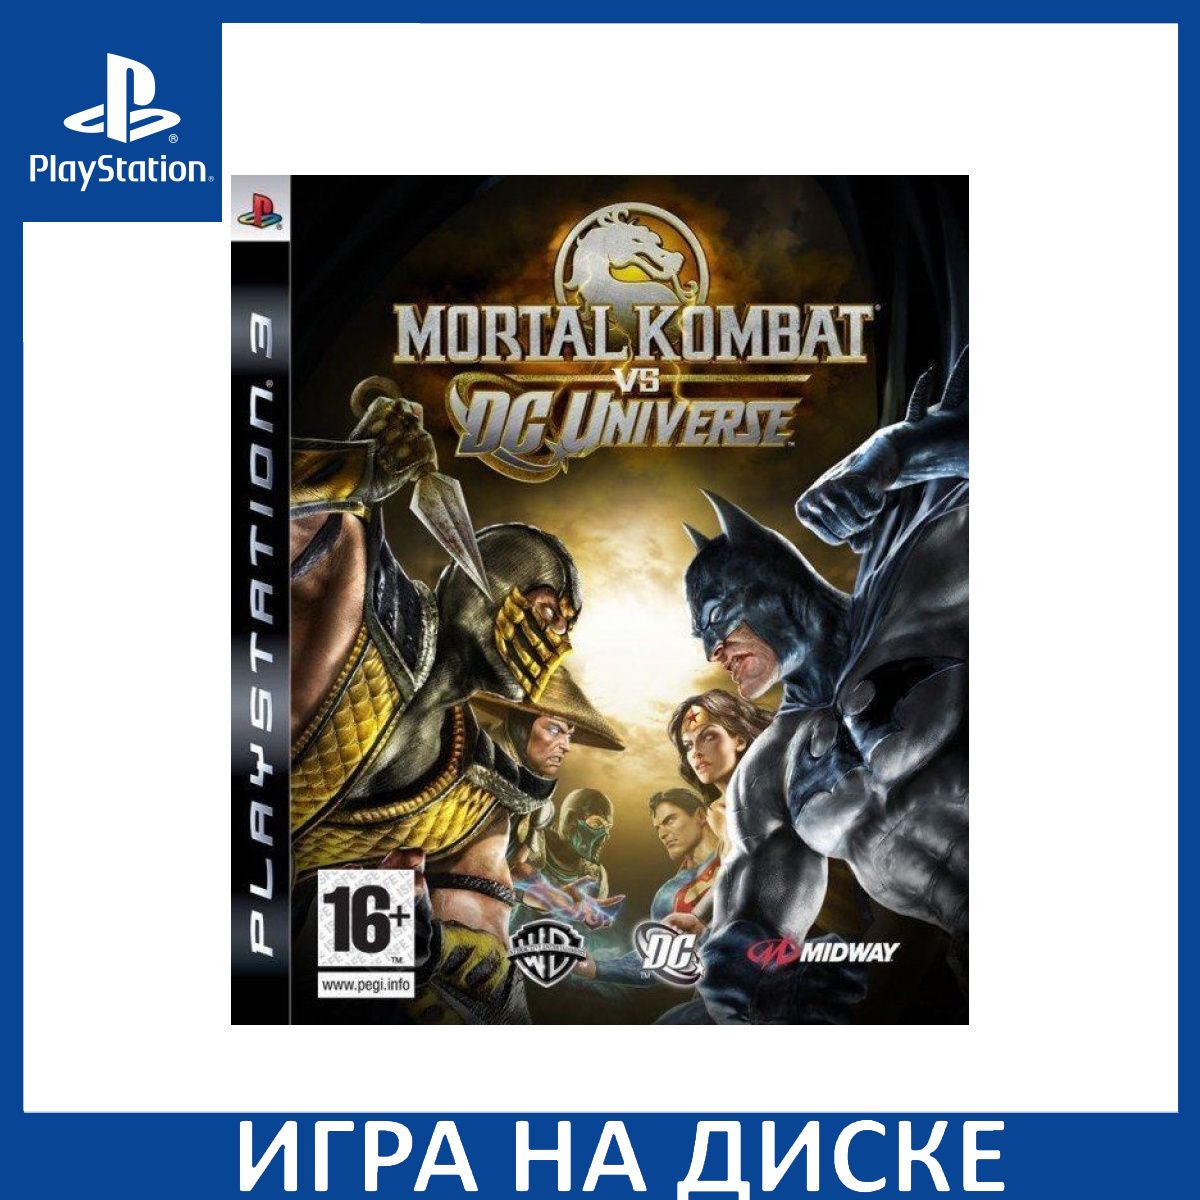 Мортал комбат сони плейстейшен 3. Mortal Kombat vs. DC Universe. Mortal Kombat vs DC Universe порт. Mortal Kombat DC ps3 обложка. MK vs DC Universe.